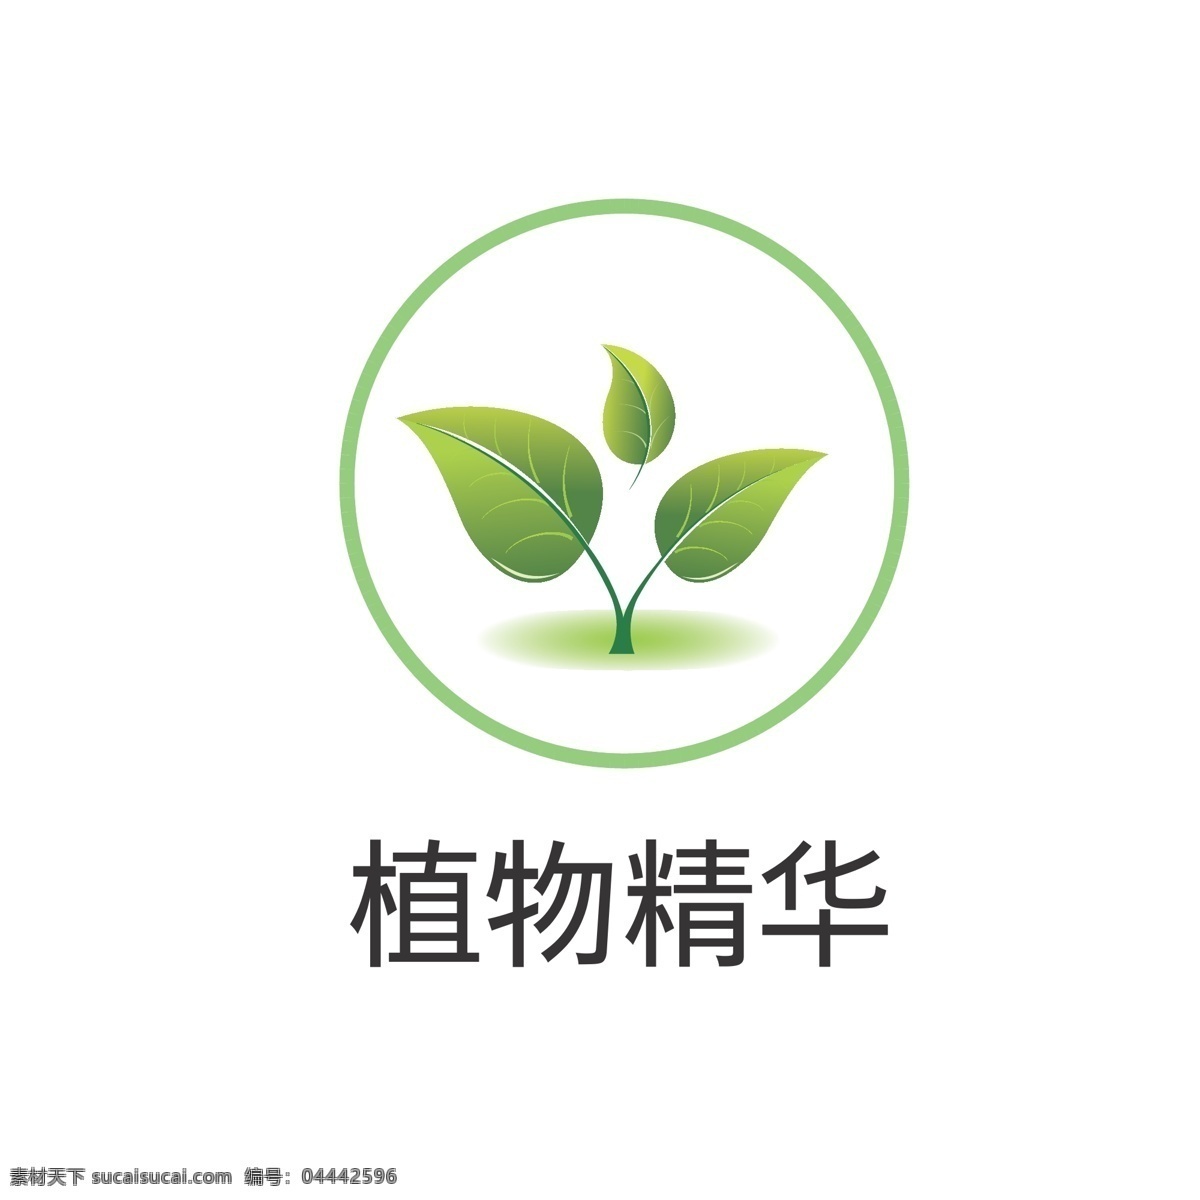 植物 精华 图标 植物精华图标 环保图标 绿叶标志 绿叶图标 植物精华